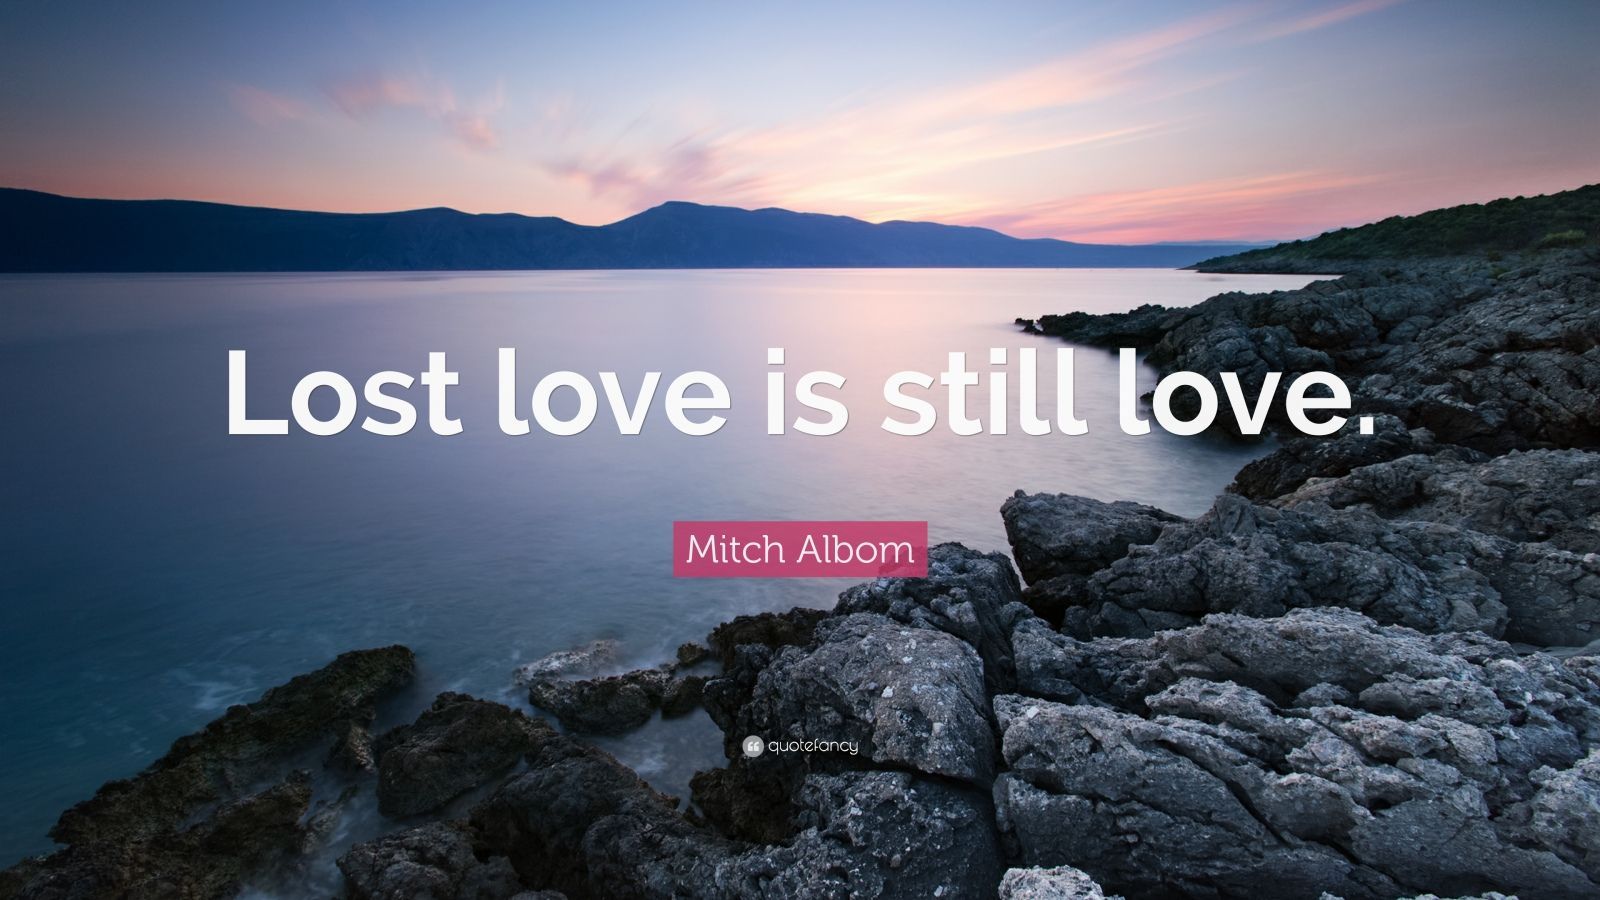 Mitch Albom Quote: “Lost love is still love.” (10 wallpaper)